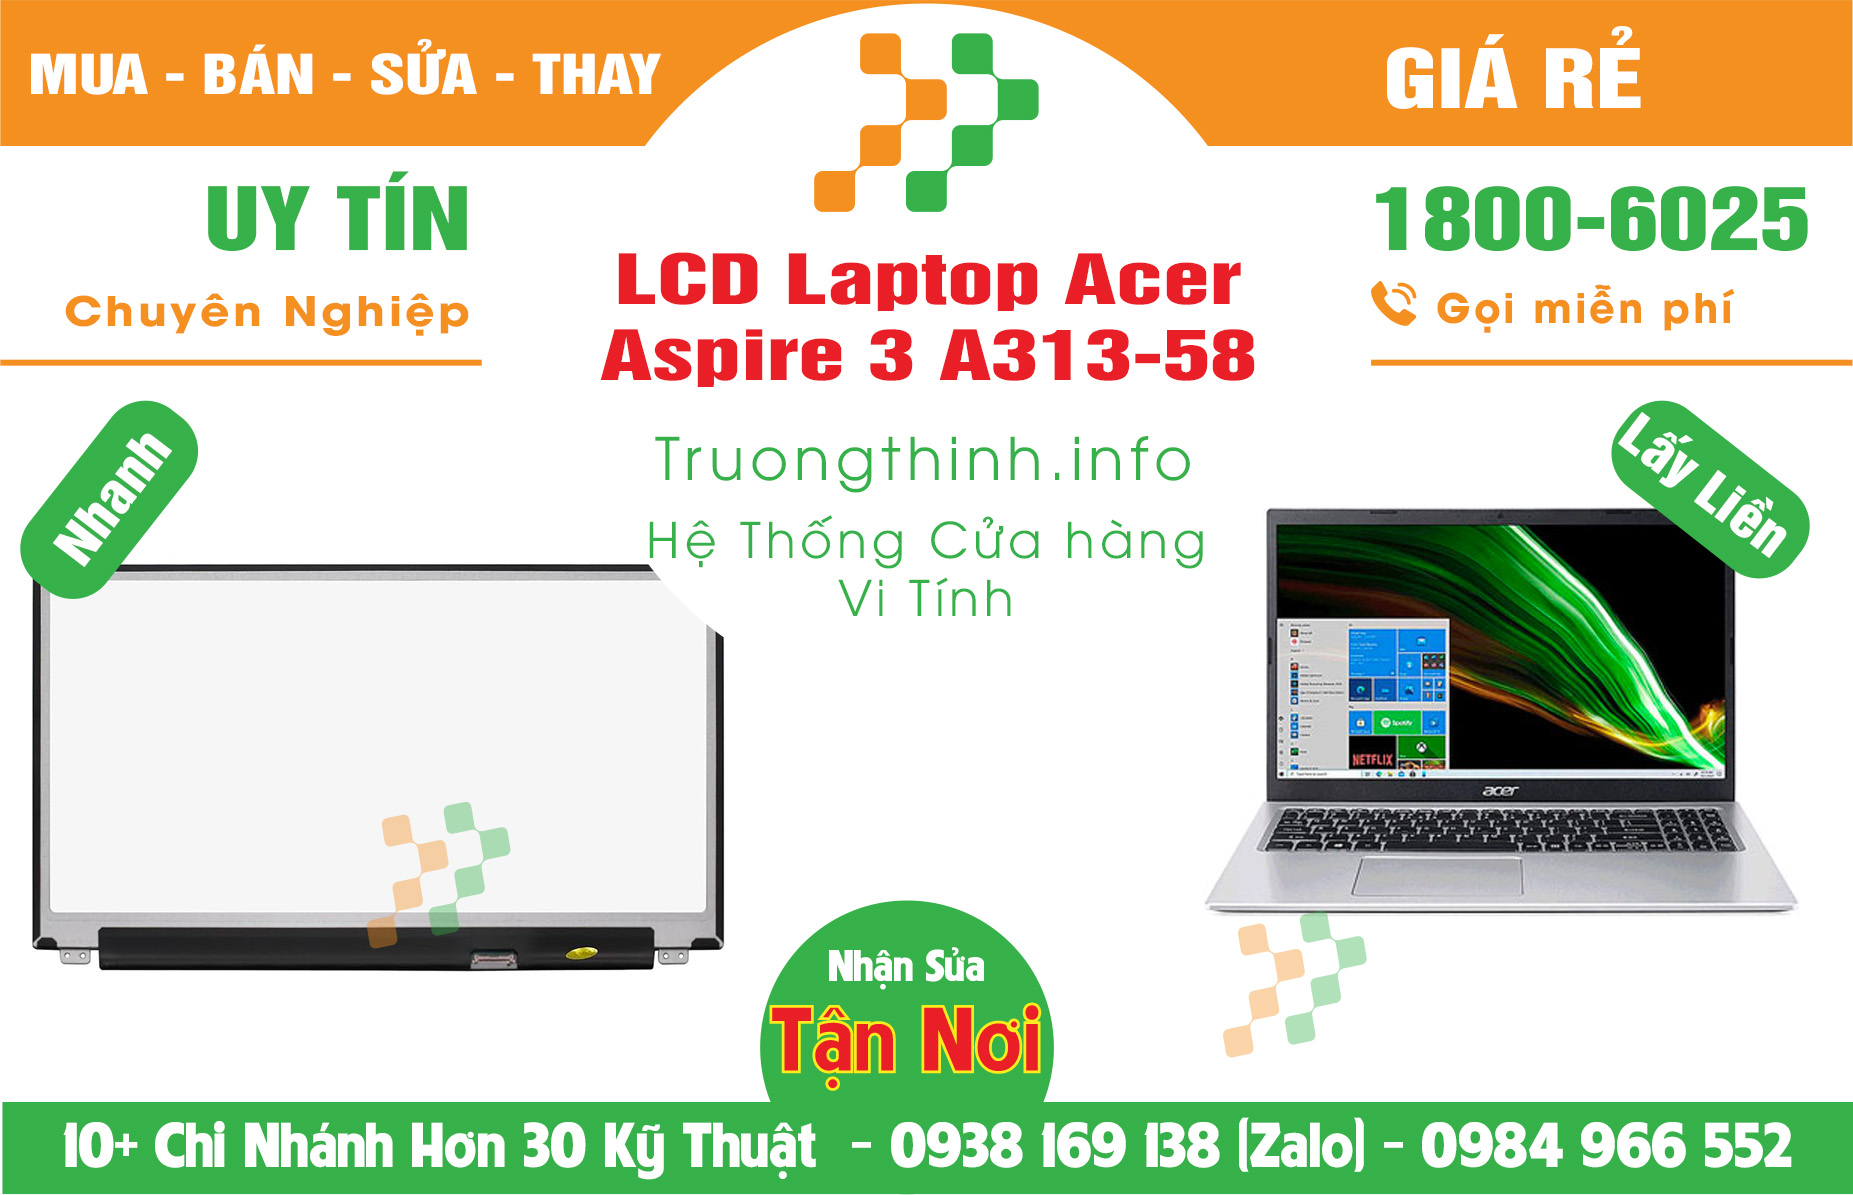 Mua Màn Hình Laptop Acer Aspire 3 A313-58 Giá Rẻ | Máy Tính Trường Thịnh Giá Rẻ